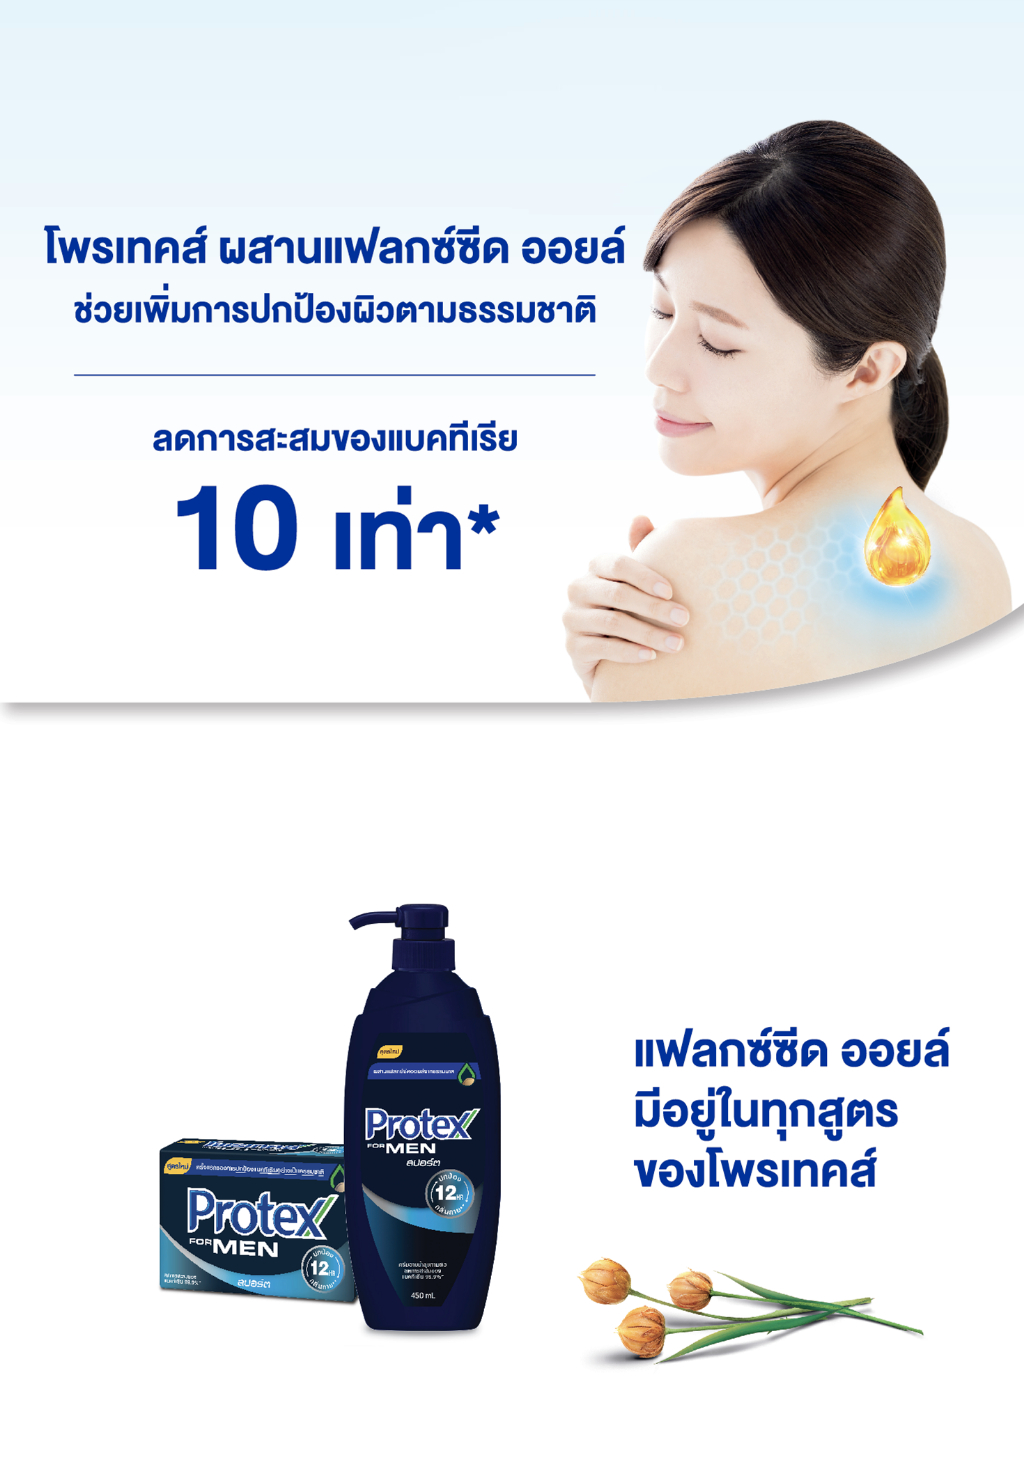 รูปภาพของ Protex โพรเทคส์ ฟอร์เมน สปอร์ต 450 มล. ขวดปั๊ม รวม 4 ขวด ให้ความรู้สึกสะอาดสดชื่น (ครีมอาบน้ำ) Protex For Men Sport Shower Cream 450 ml Pump x4